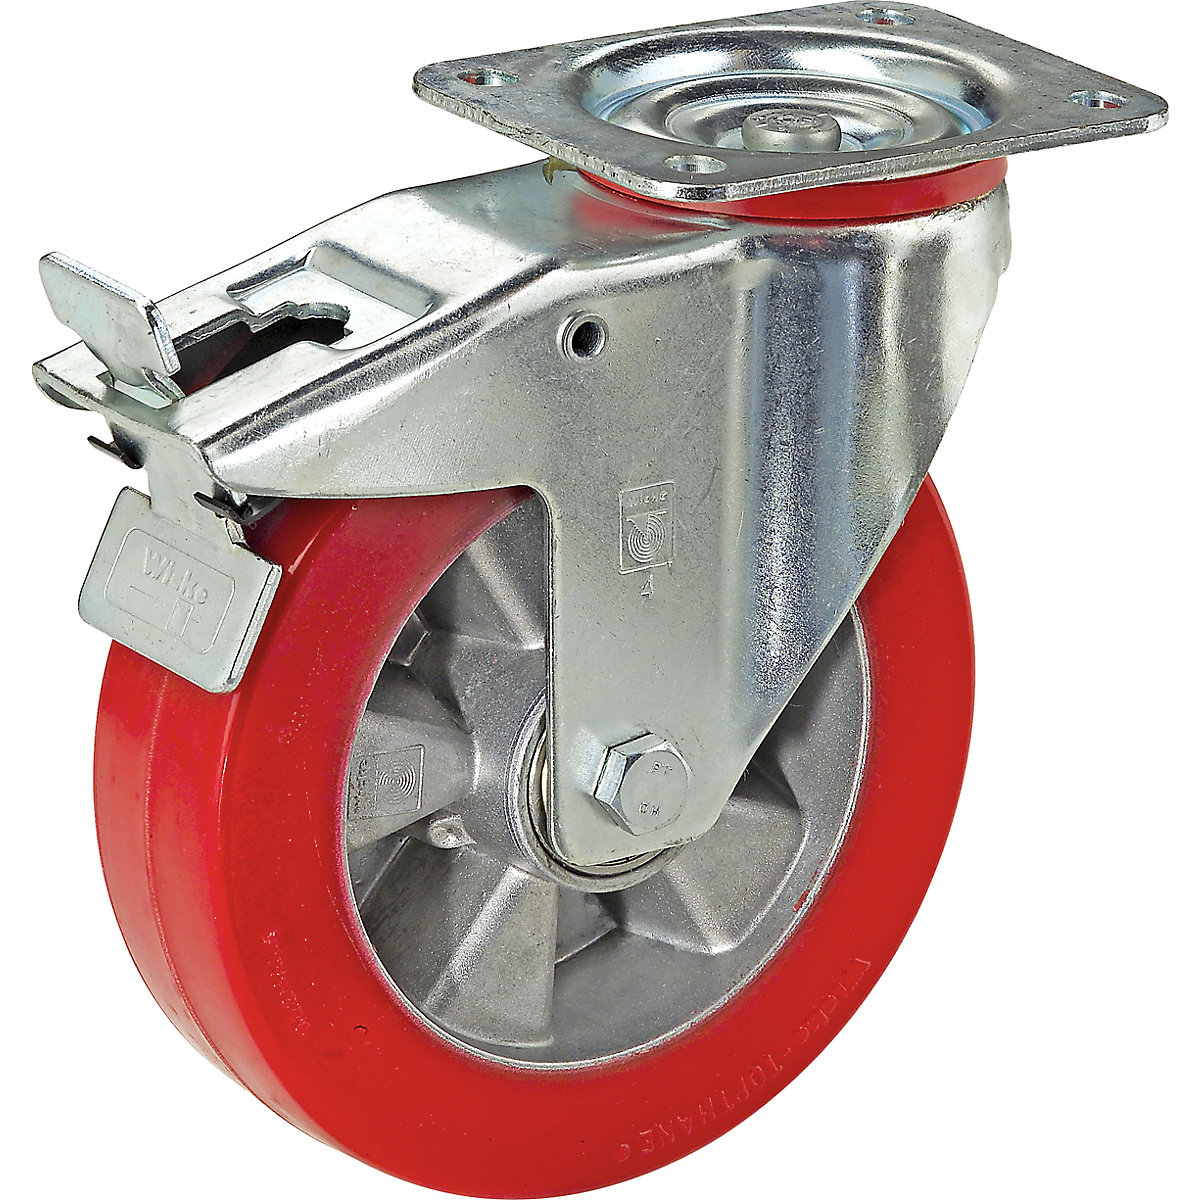 Polyuretánová obruč na hliníkovom disku – Wicke, Ø x šírka kolesa 125 x 40 mm, otočné koliesko s dvojitou brzdou, nosnosť 200 kg-5